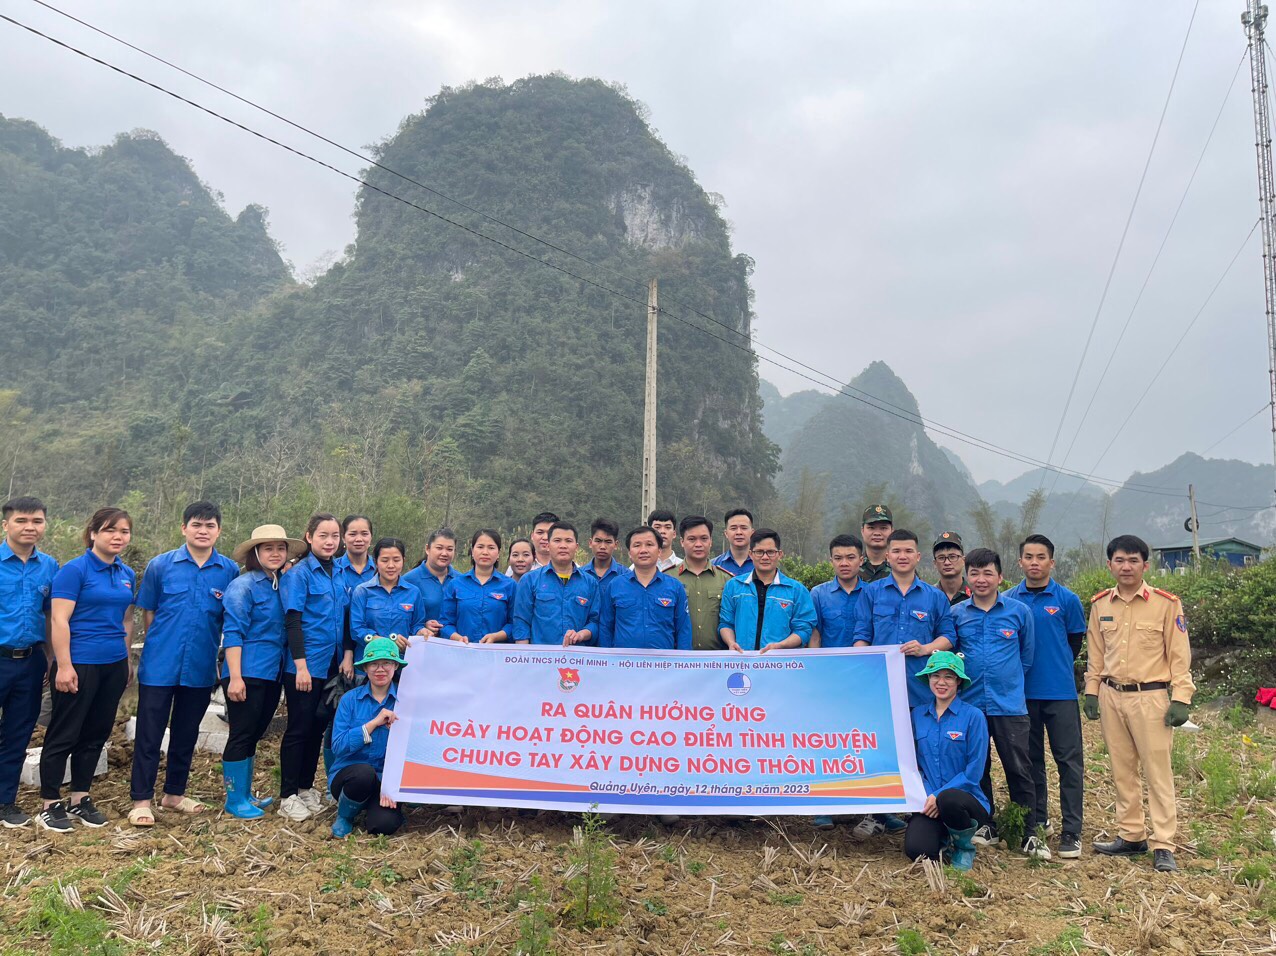 BTV Huyện Đoàn Quảng Hòa tổ chức ra quân Ngày hoạt động tình nguyện chung tay xây dựng nông thôn mới  "xây mương nội đồng" tại xóm Lũng Luông, thị trấn Quảng Uyên.